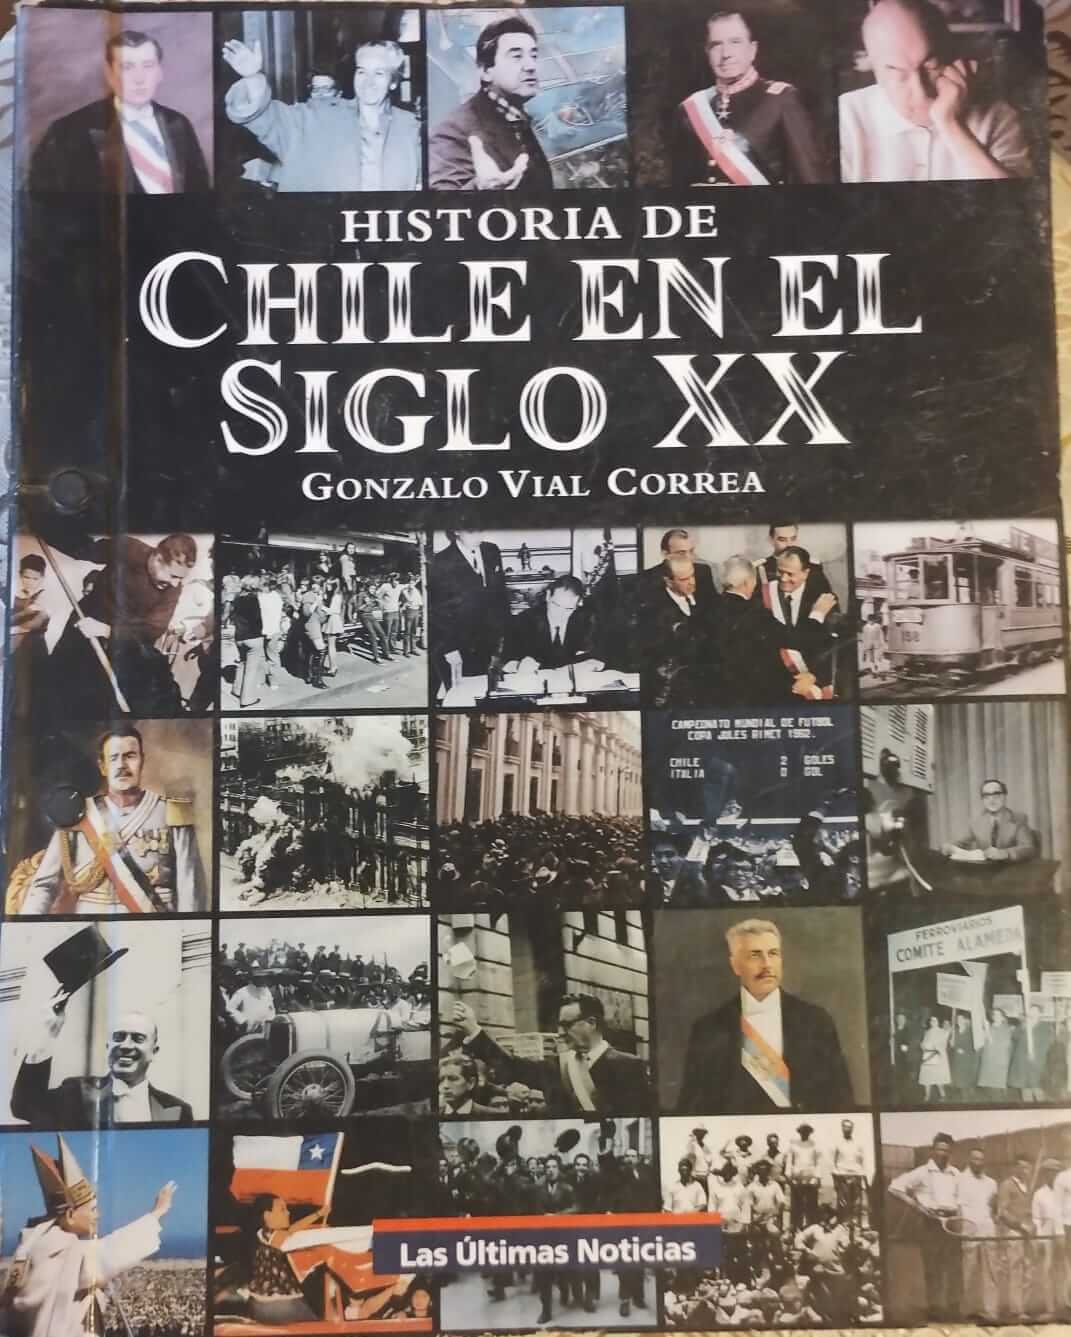 Chile en el siglo XX